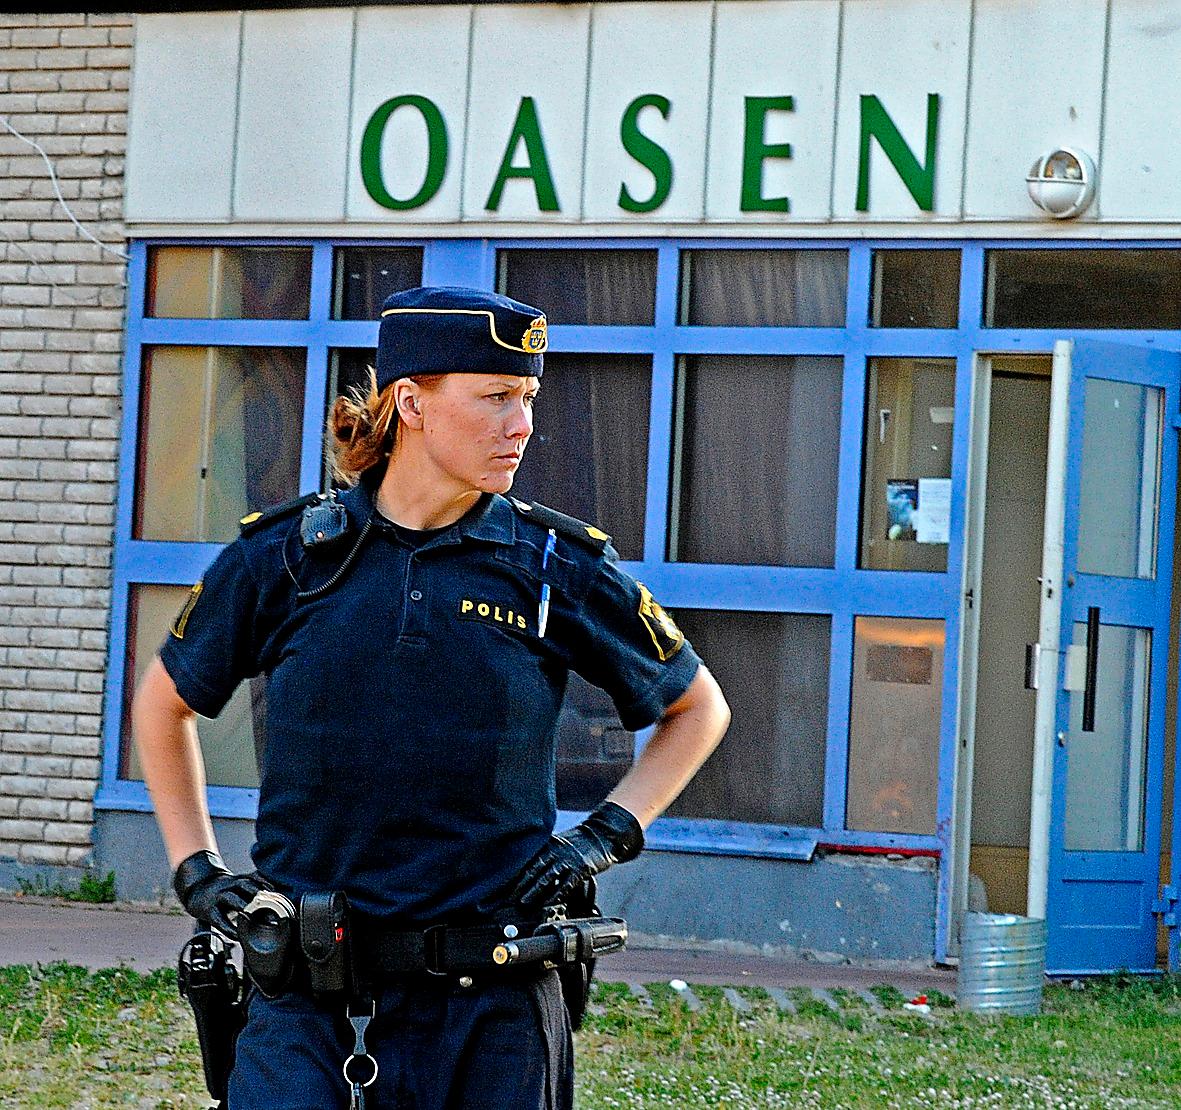 Polis utanför kaféet Oasen i Södertälje där två unga män sköts ihjäl 2010. Ann Törnkvist berättar historien om skuggsamhället bakom dådet.